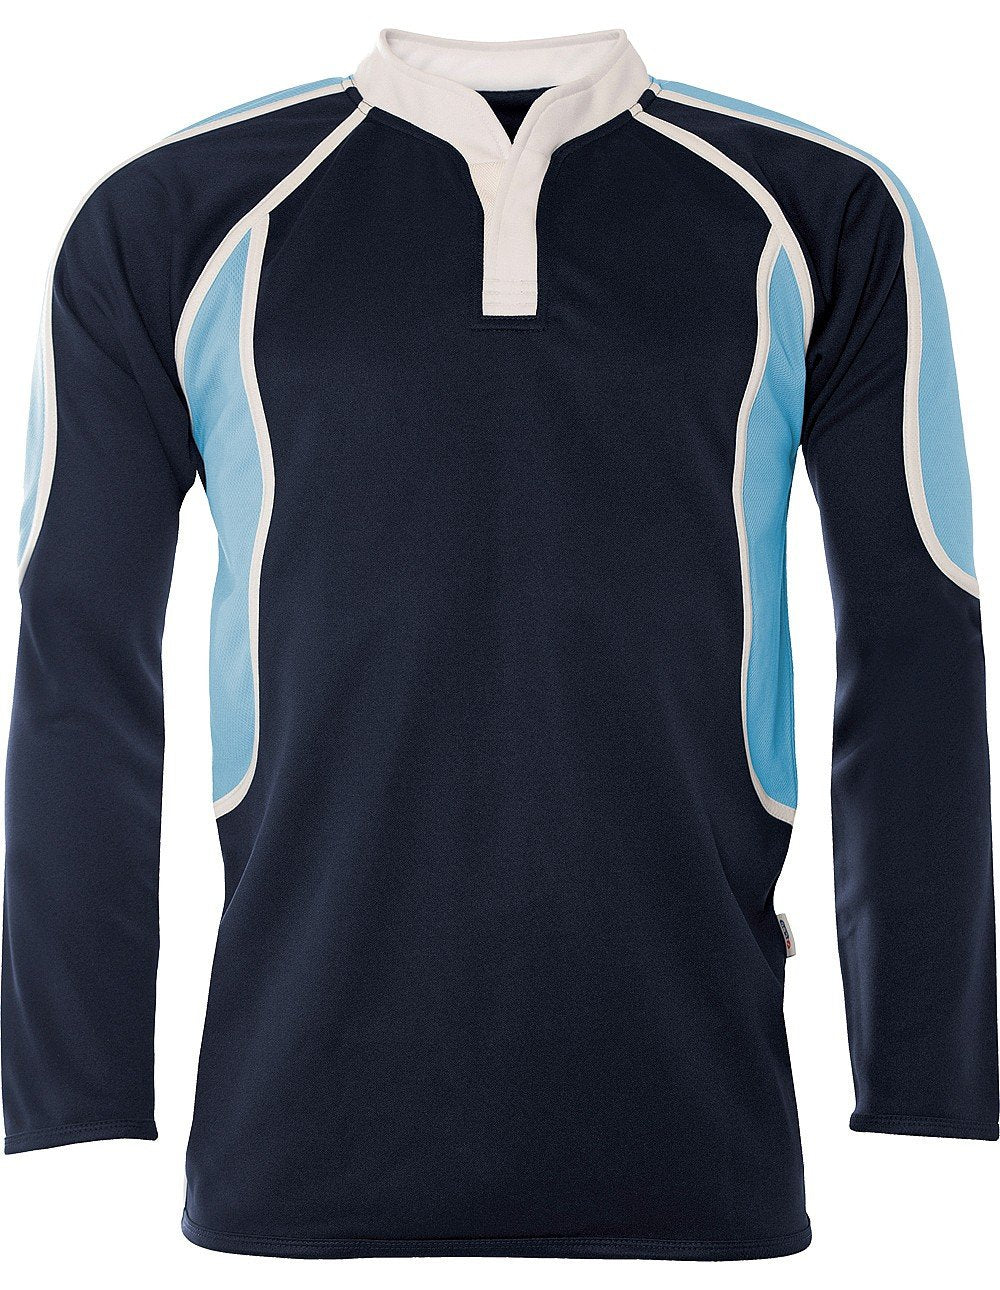 Chase High School - Pro-Tec Rugby Top Navy/Sky - Schoolwear Centres | School Uniform Centres